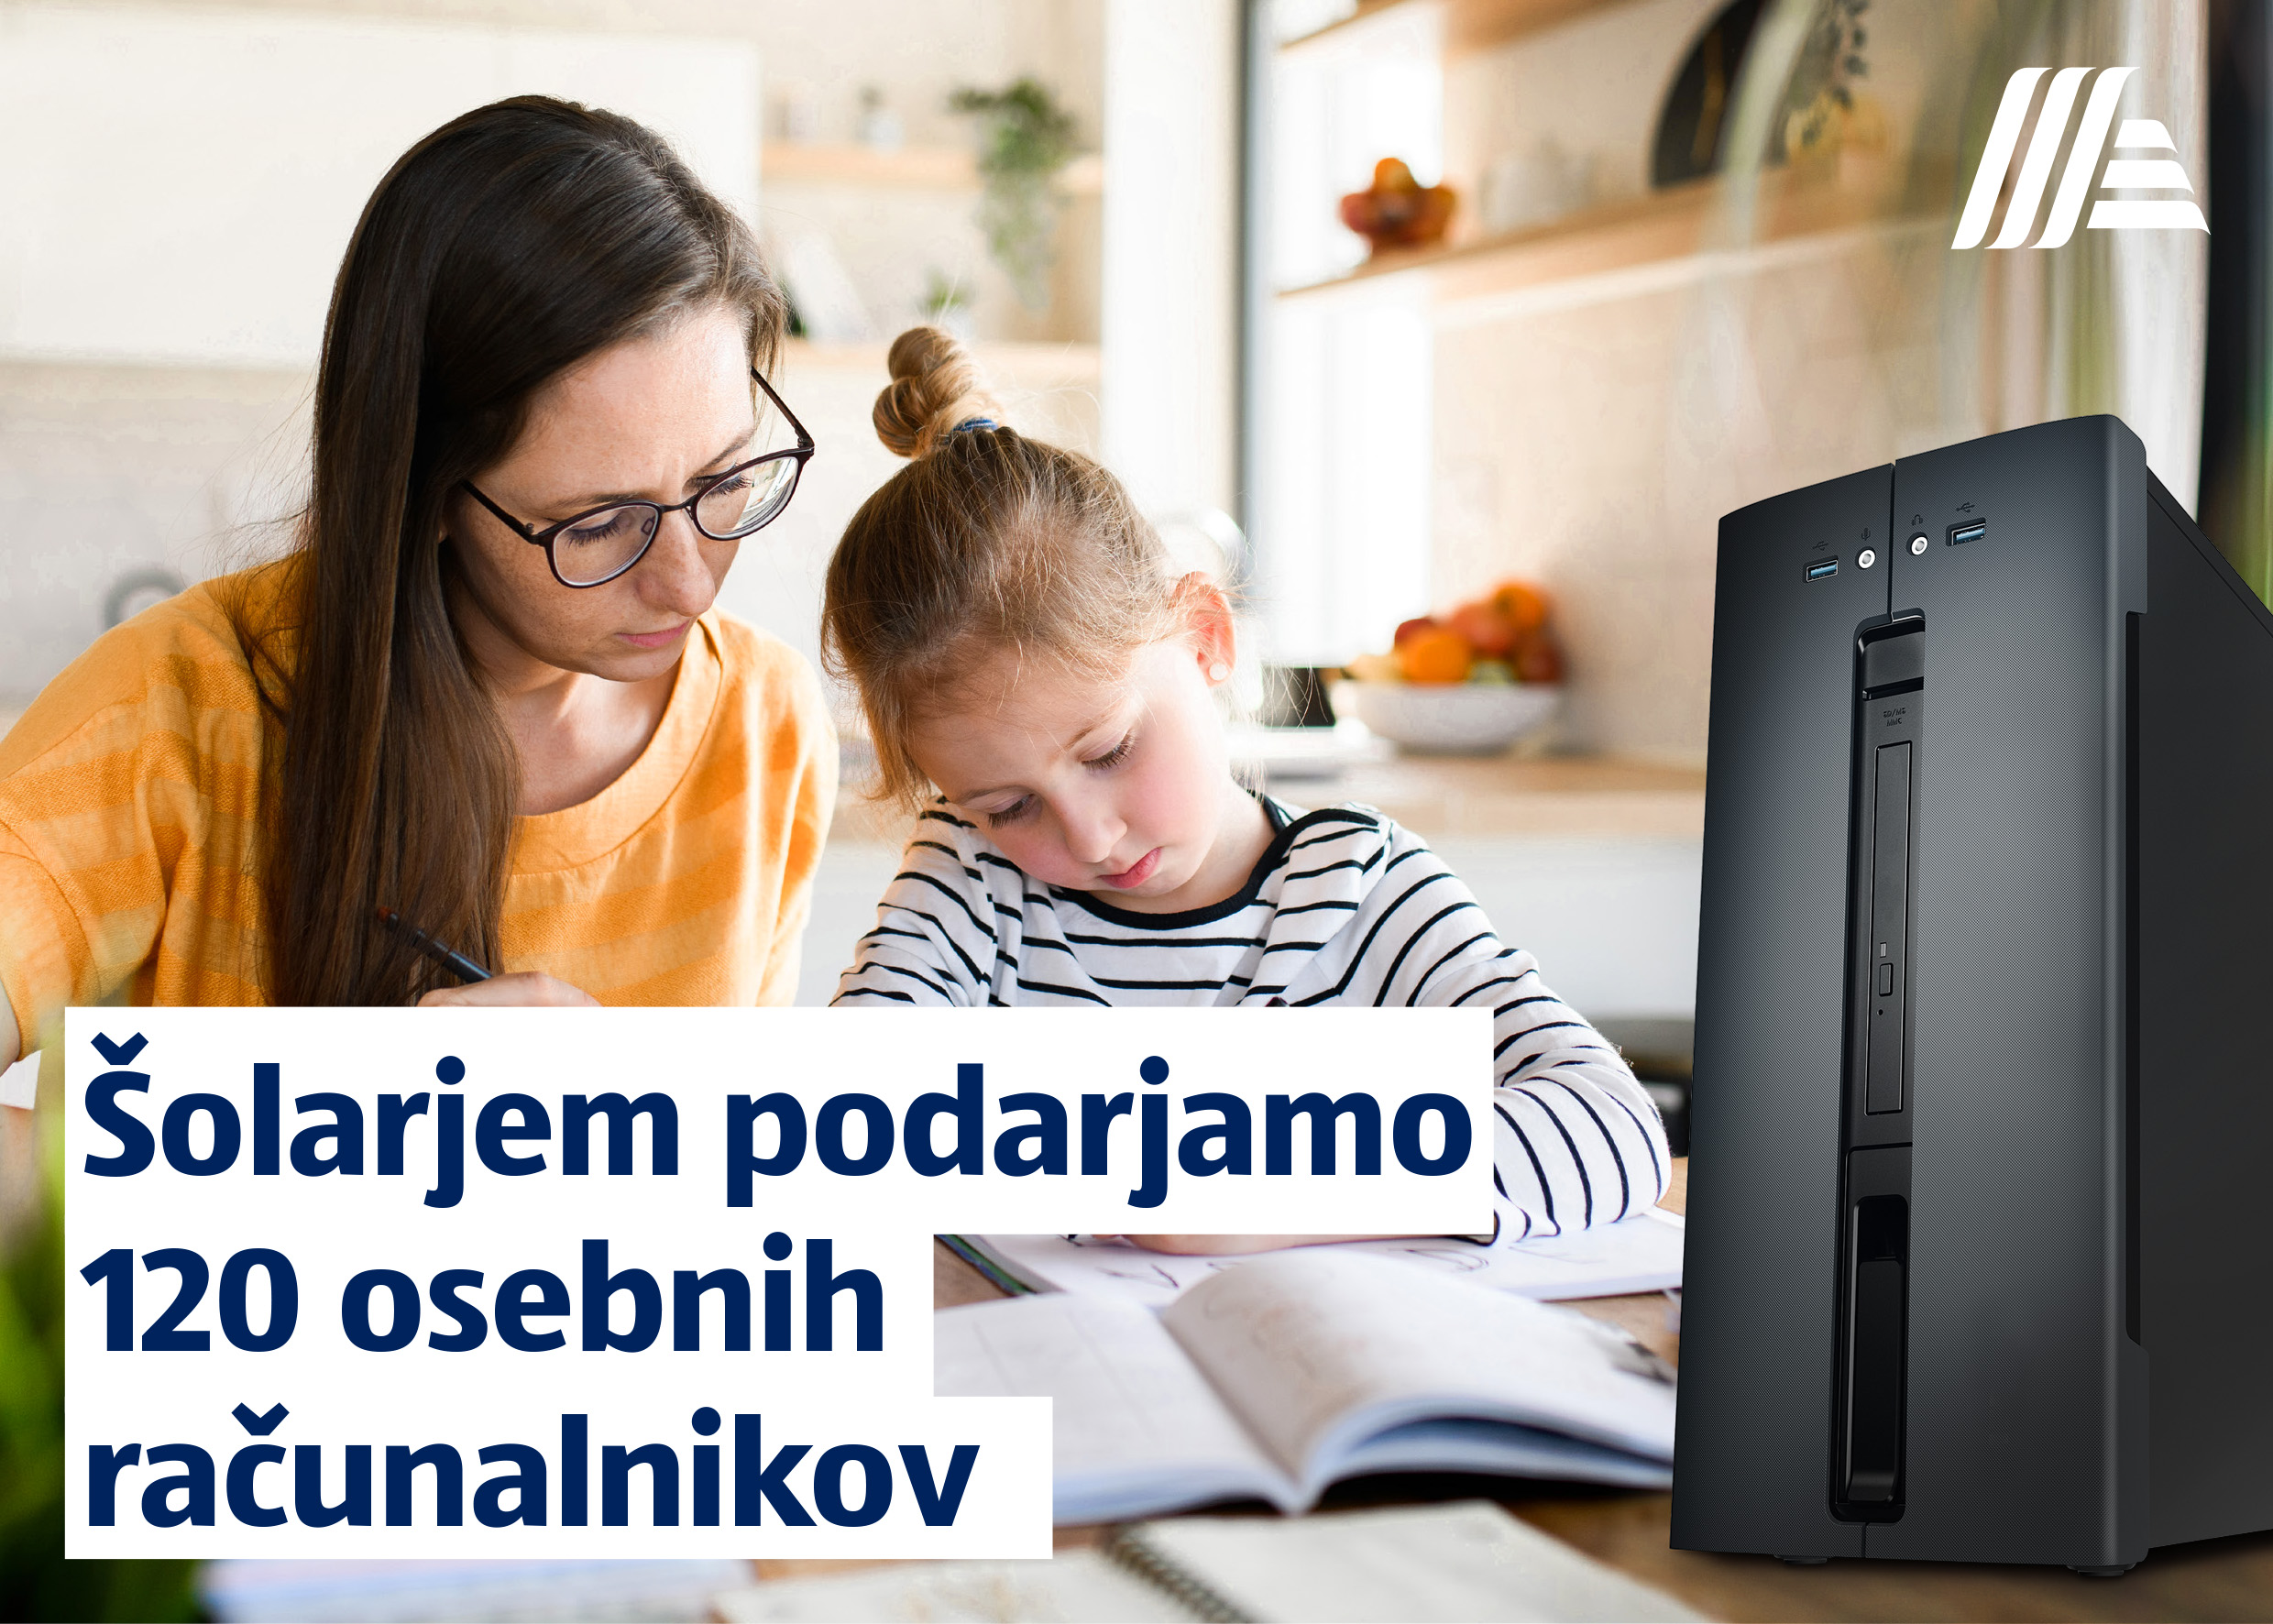 (Slovensko) HOFER doniral 120 osebnih računalnikov za šolarje